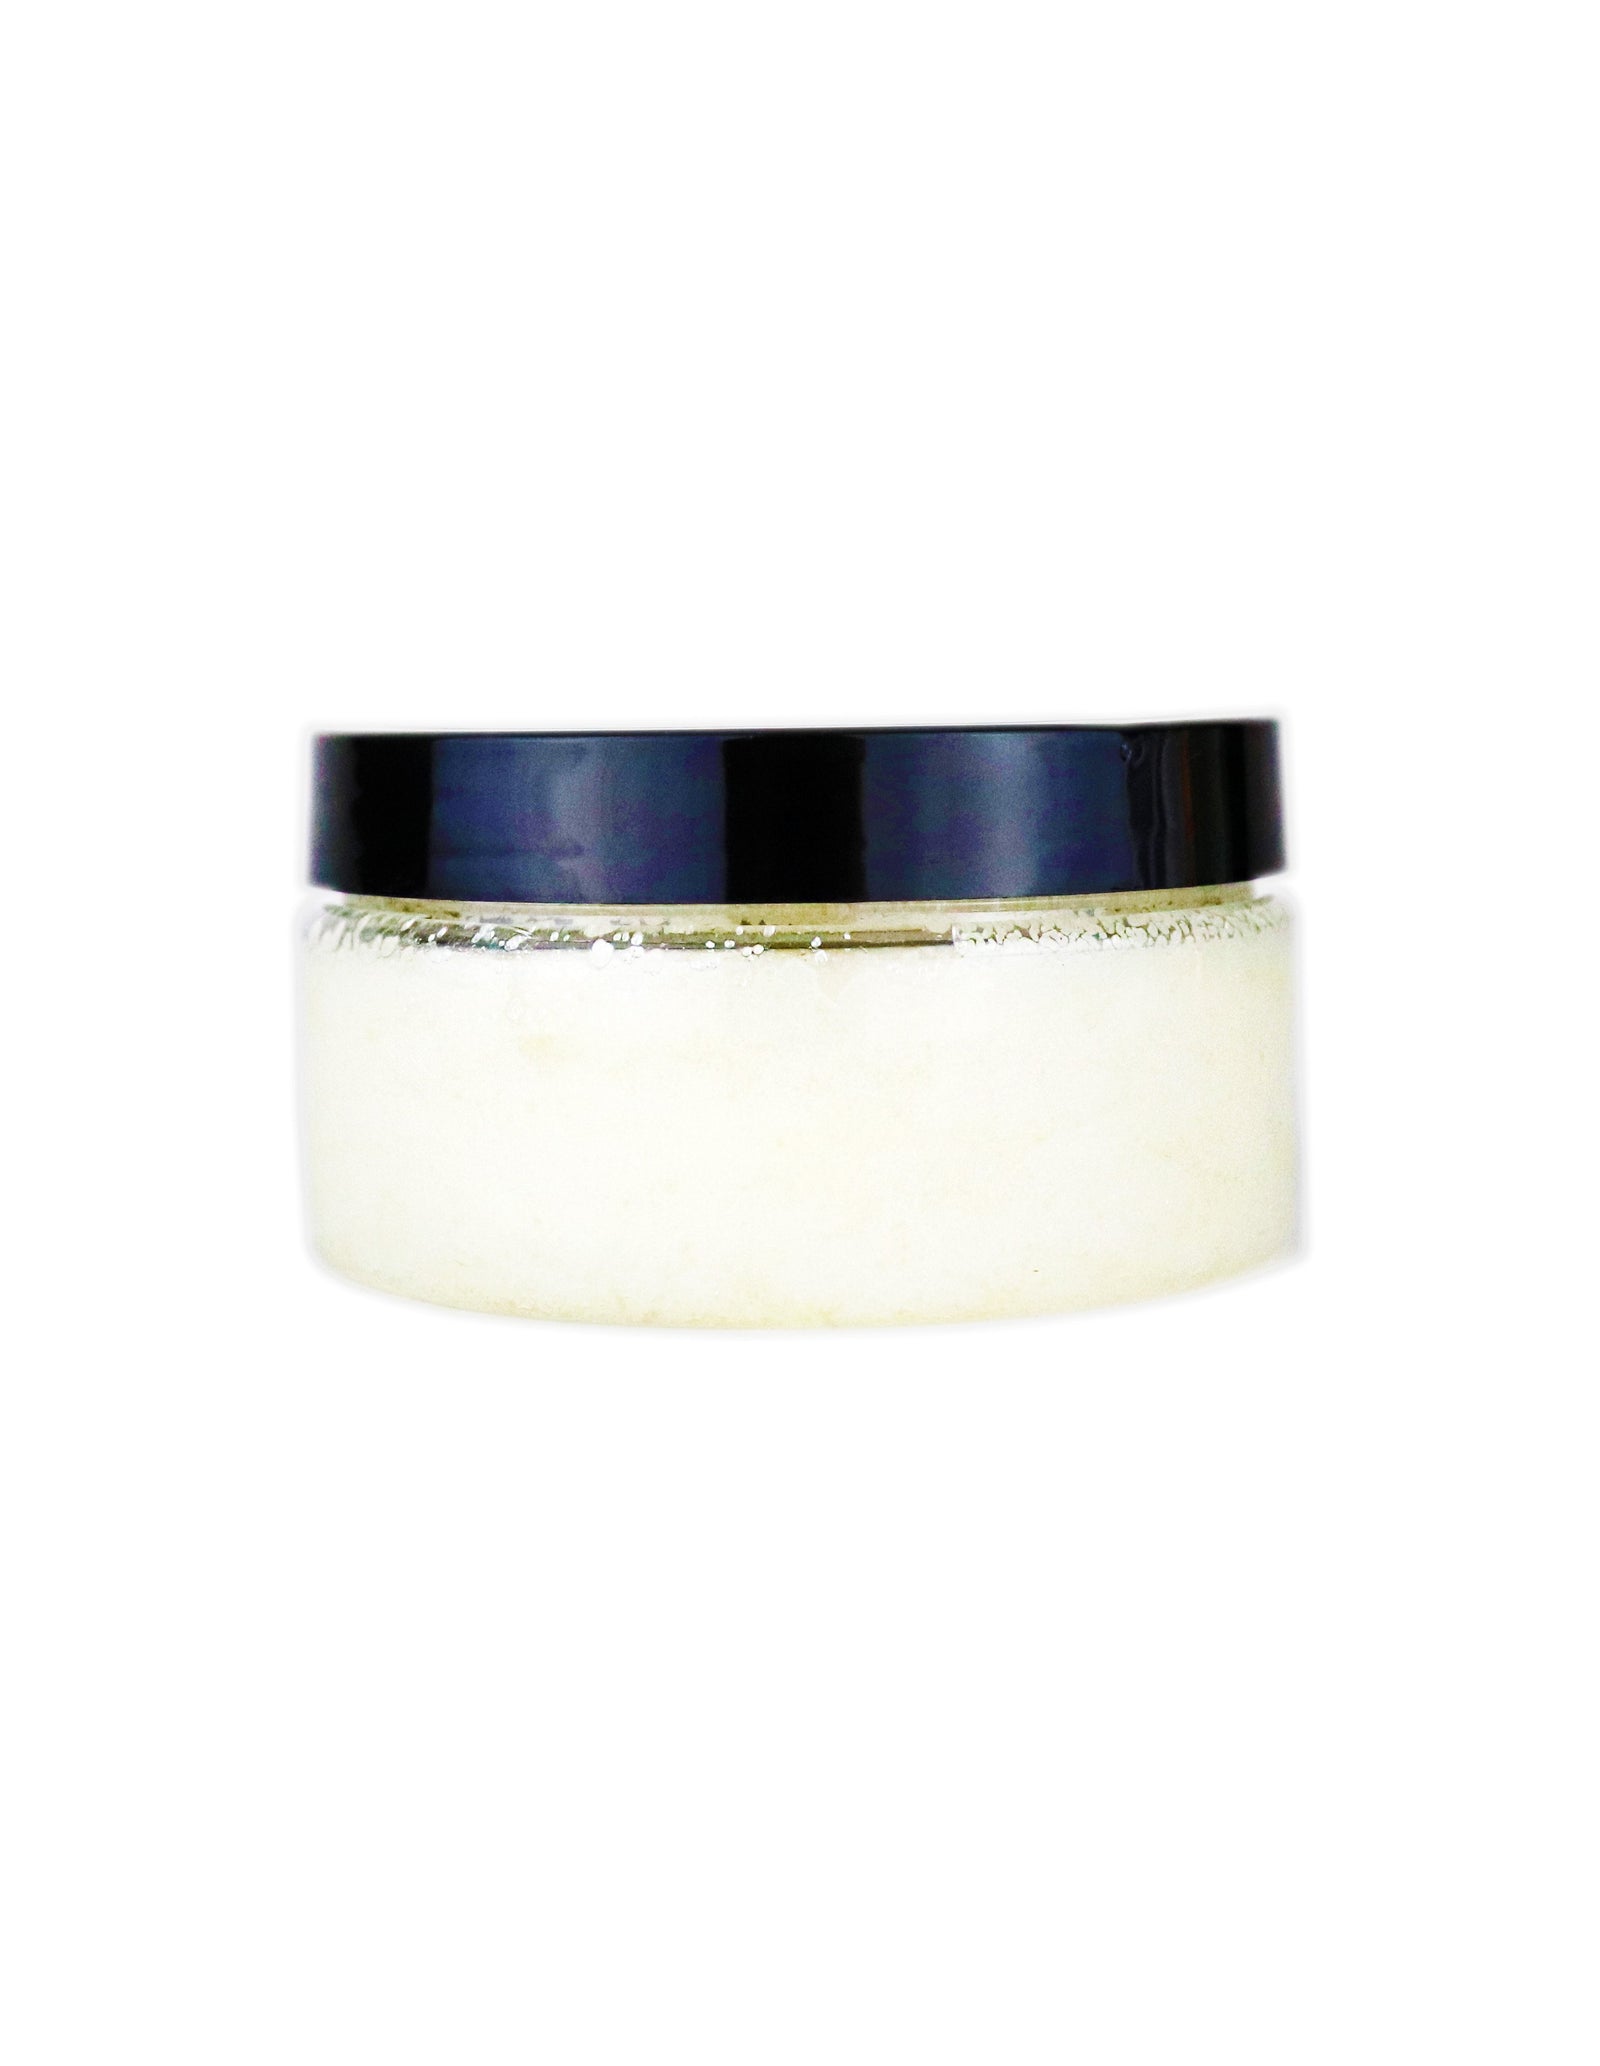 Pure Lavender Body Scrub - Soapstones Natural Skincare